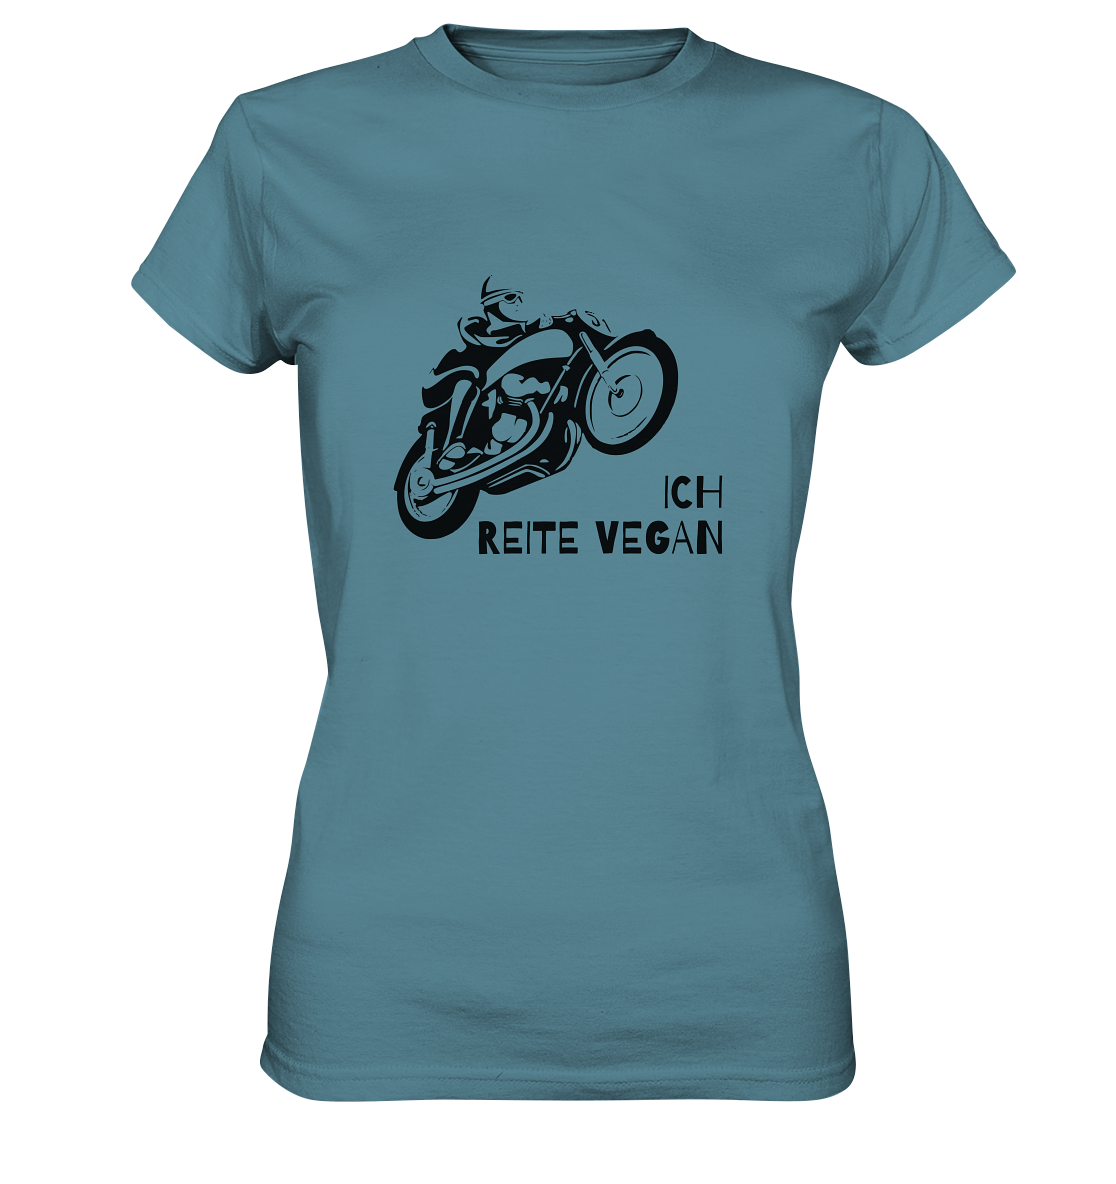 "Ich reite vegan" | Damen-Shirt mit Motorrad-Spruch in dunklem Design